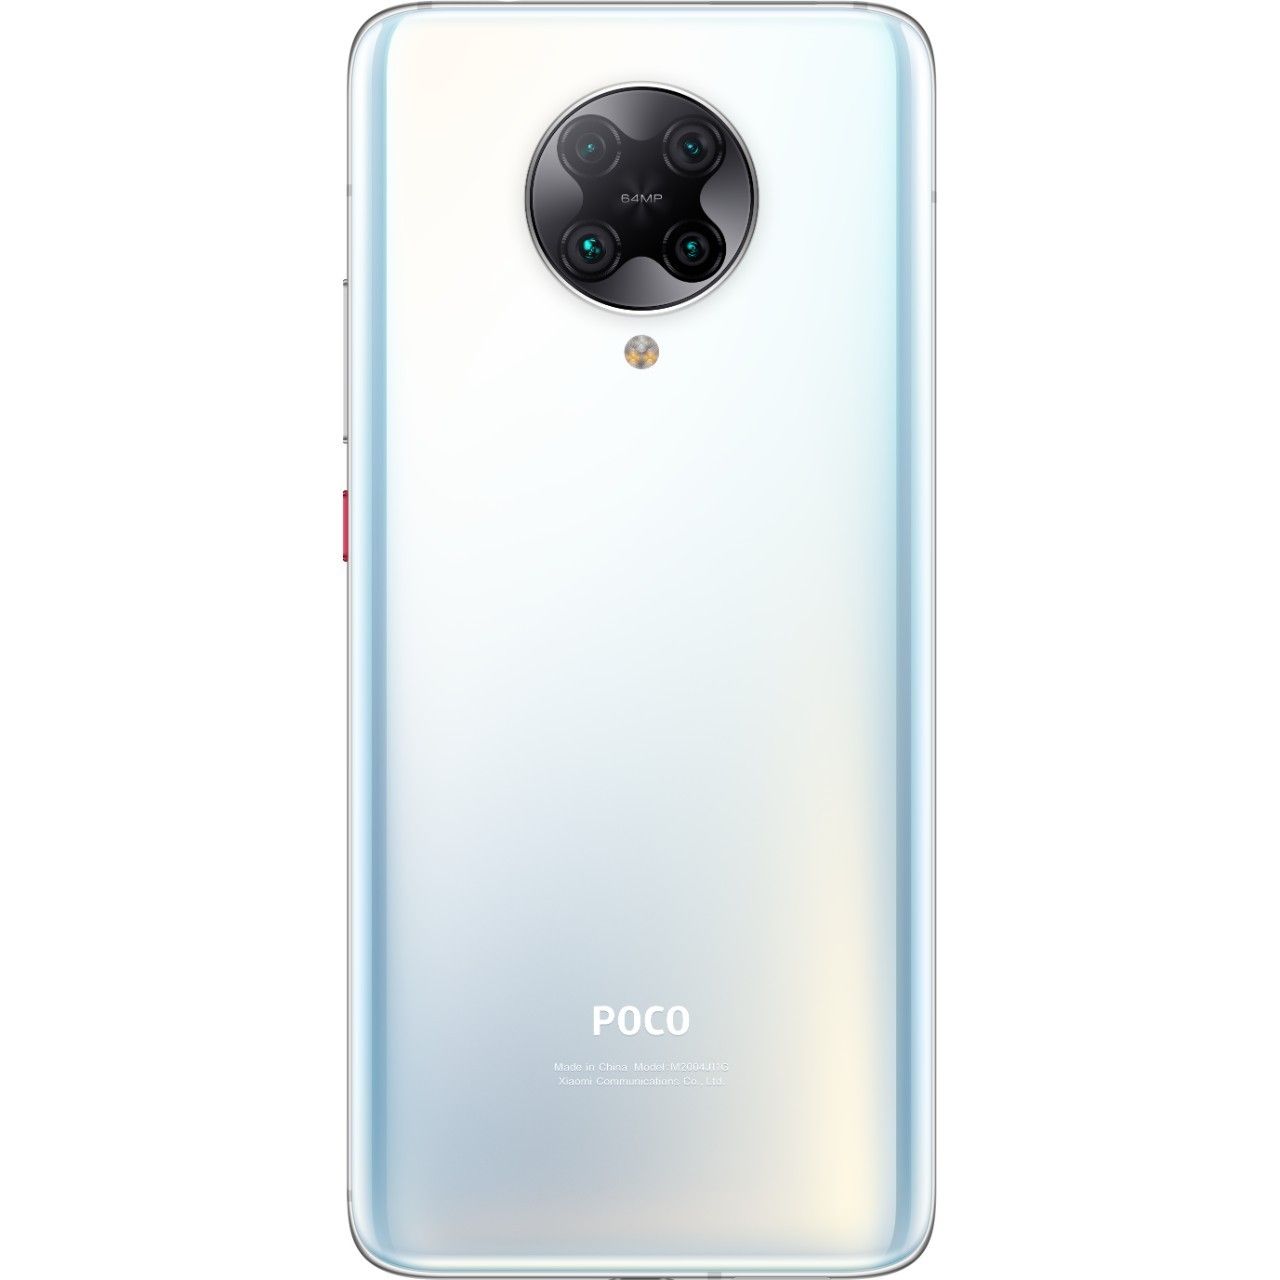 Xiaomi Poco F2 Pro 6/128GB White